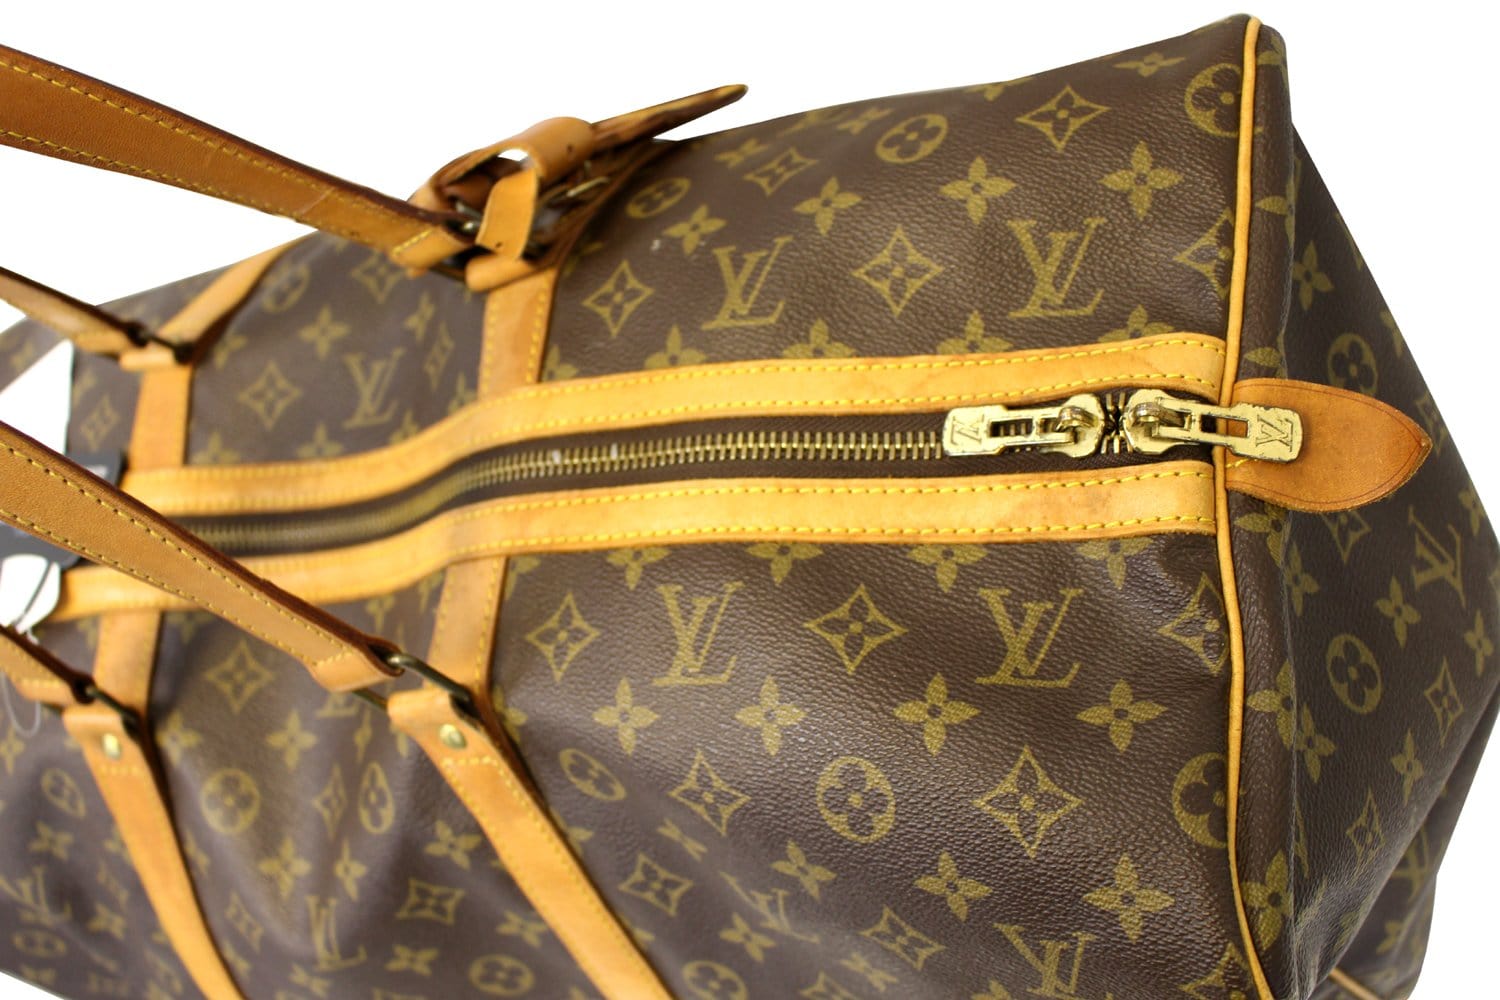 Louis Vuitton Sac Souple 55 Monogram Travel Bag Auction